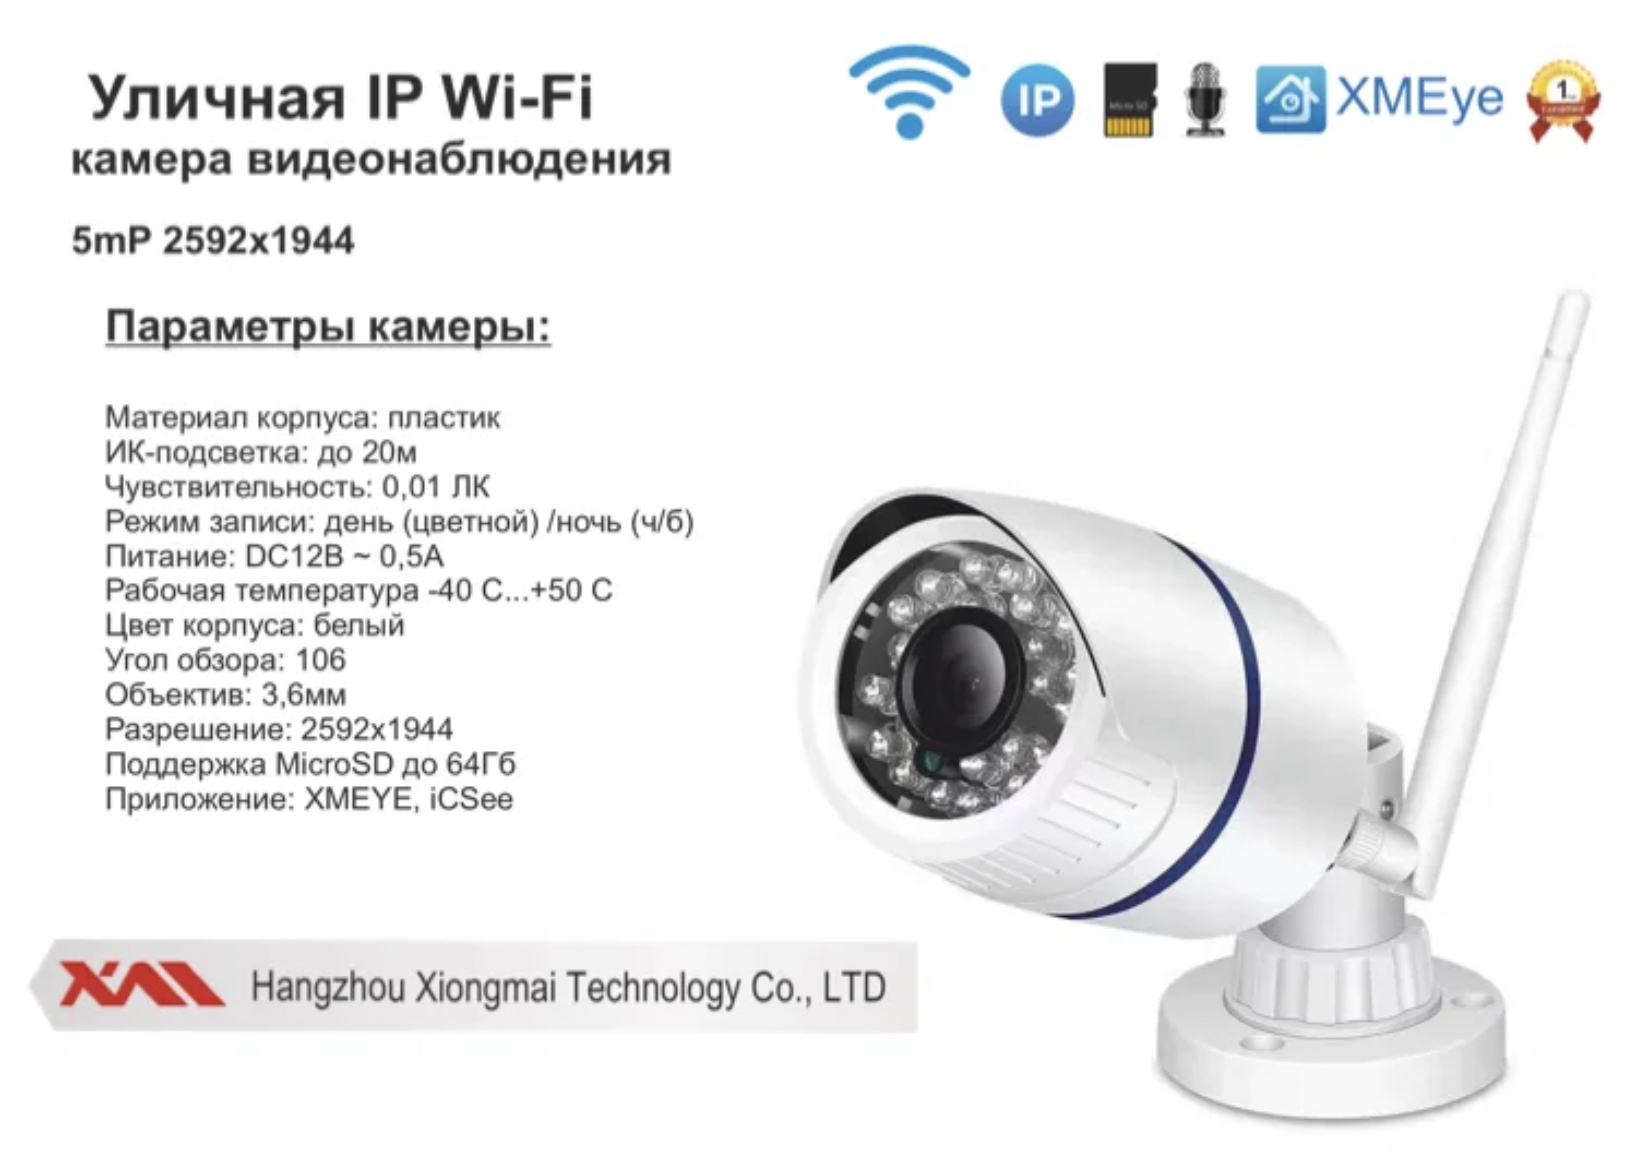 картинка DVW100IPWF5MP. Уличная IP Wi-Fi камера видеонаблюдения 5мП от магазина Дом Видеонаблюдения (CCTVdom)